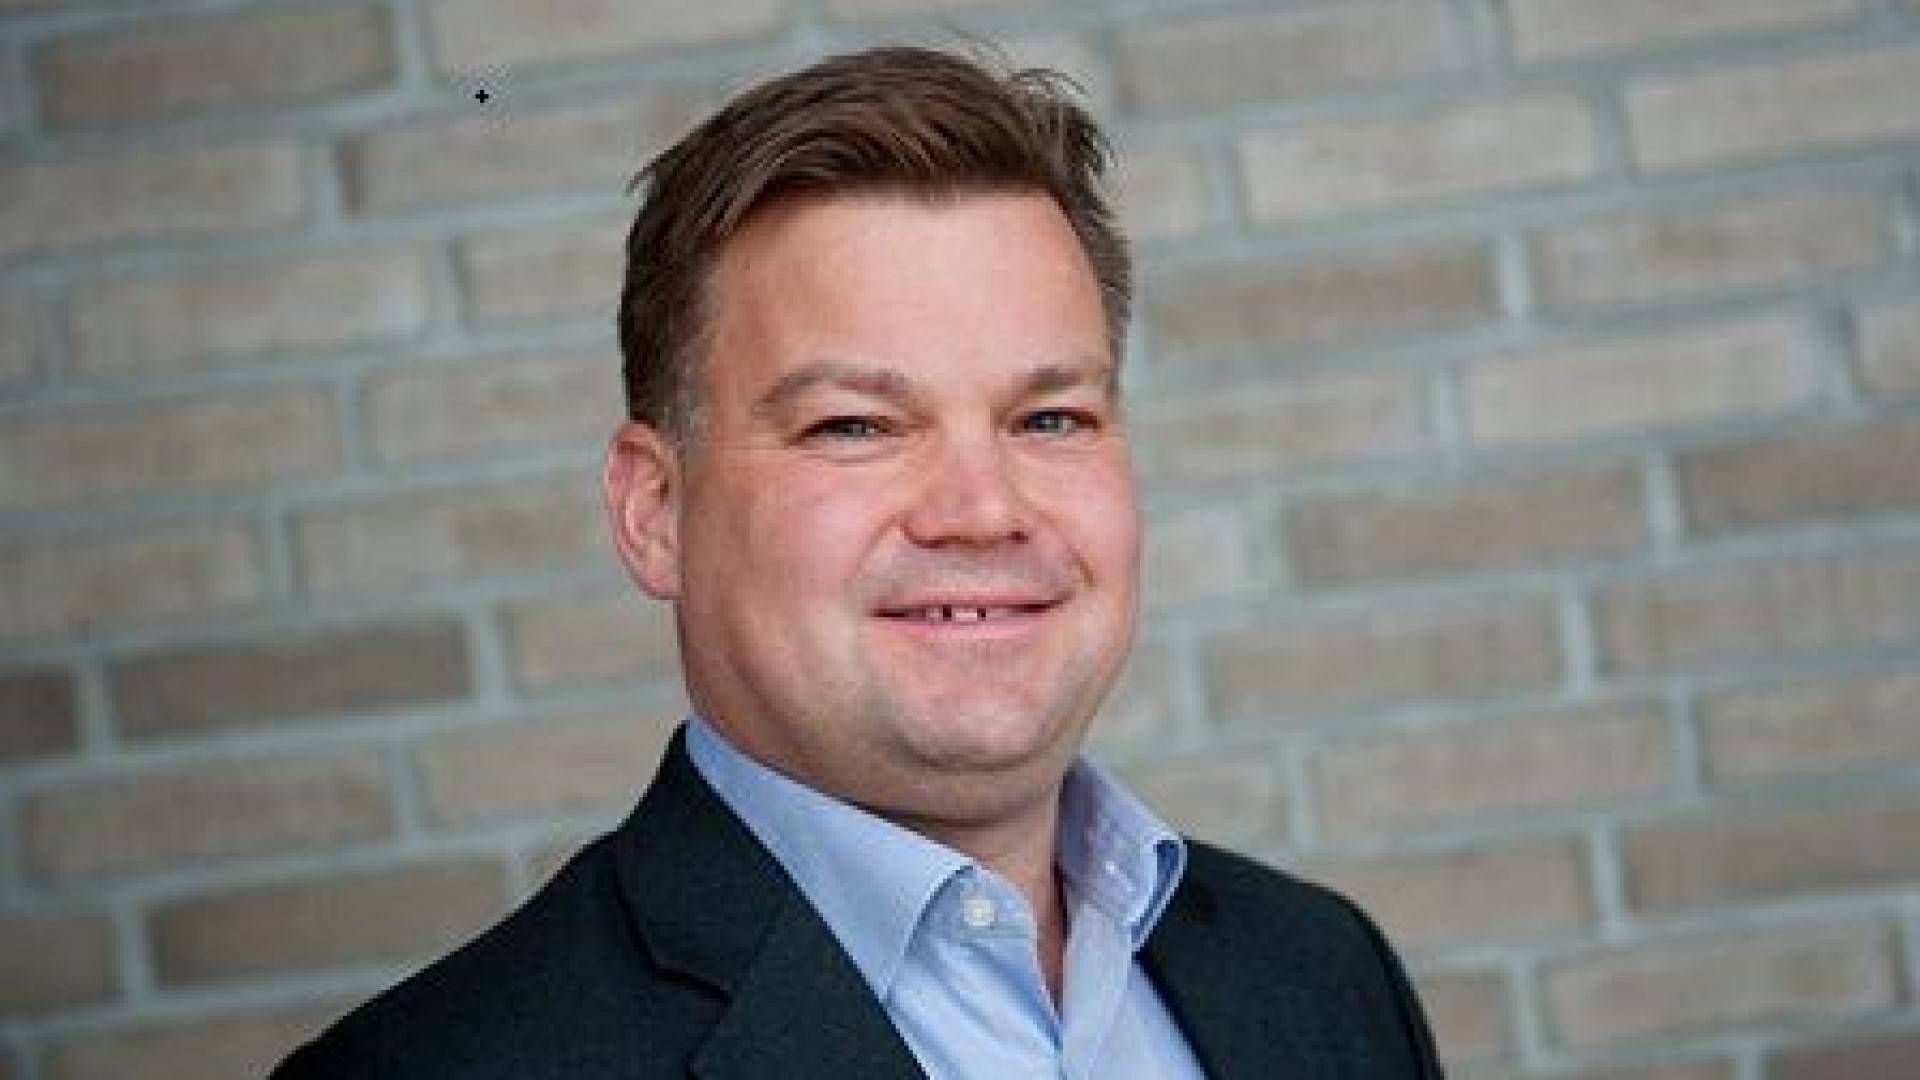 Anders Petter Wik er fersk administrerende direktør i Landkreditt Forvaltning. | Foto: Privat